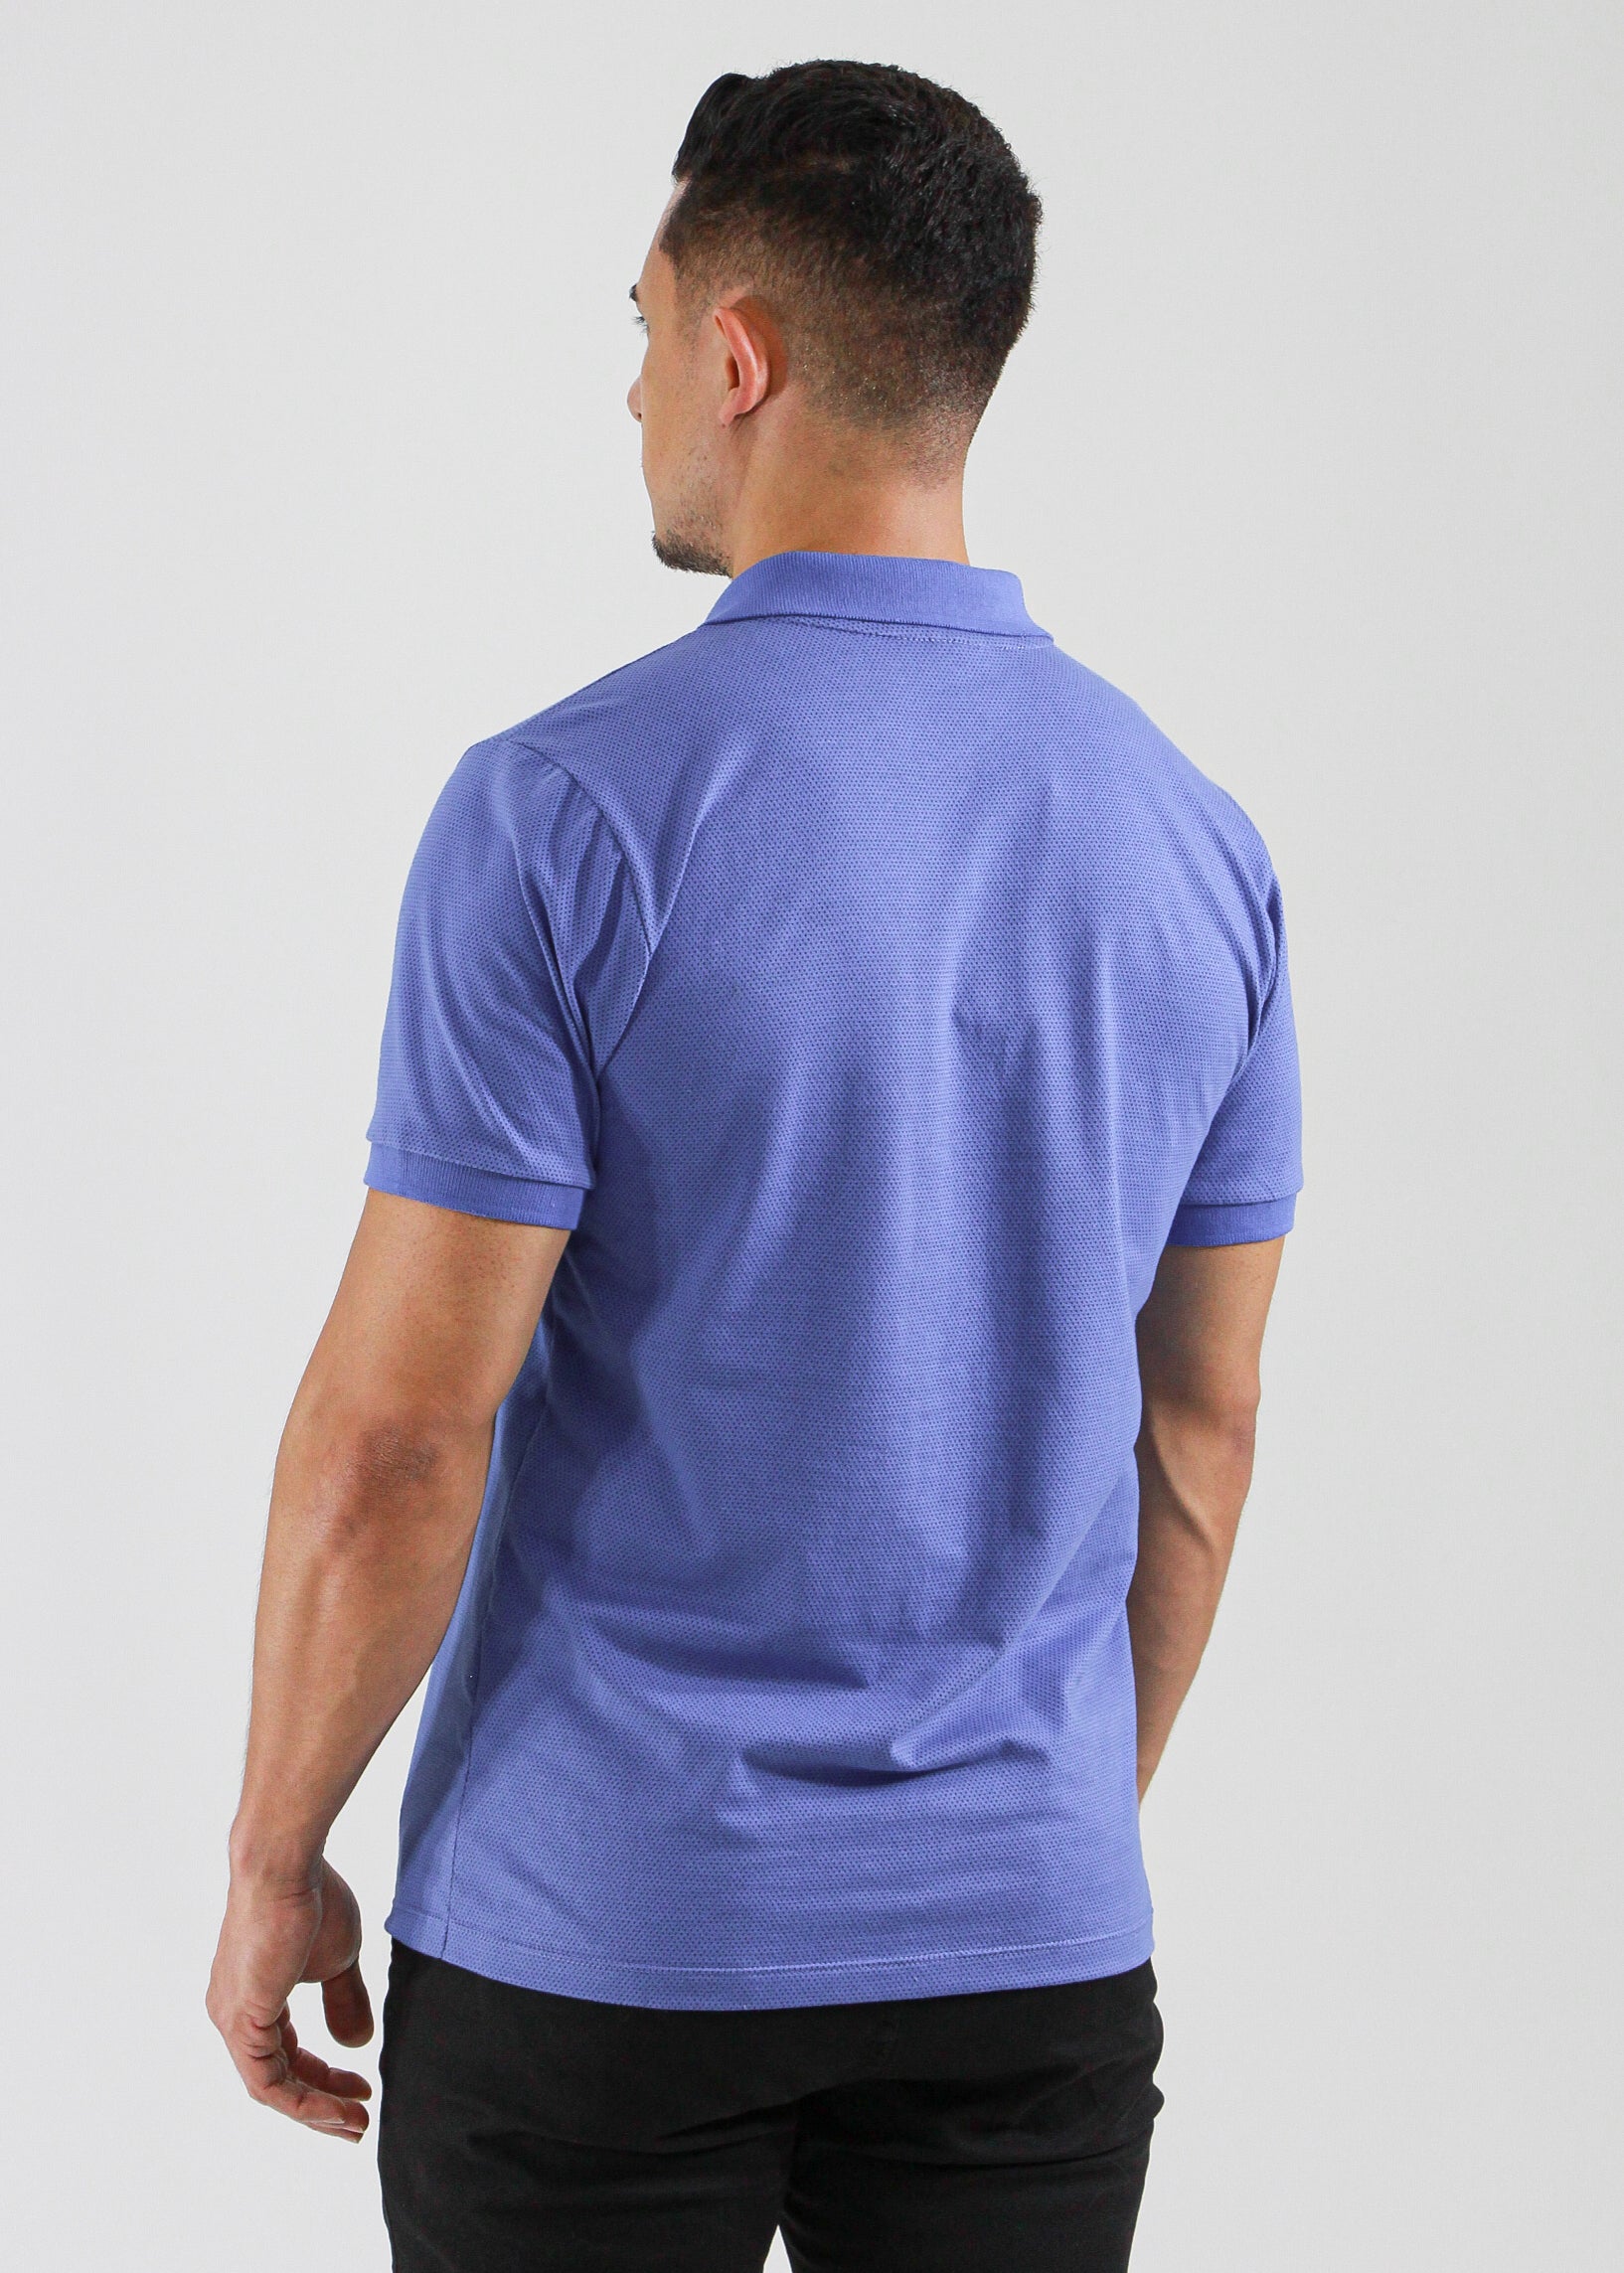 Camisa Polo Pontilhada - Azul